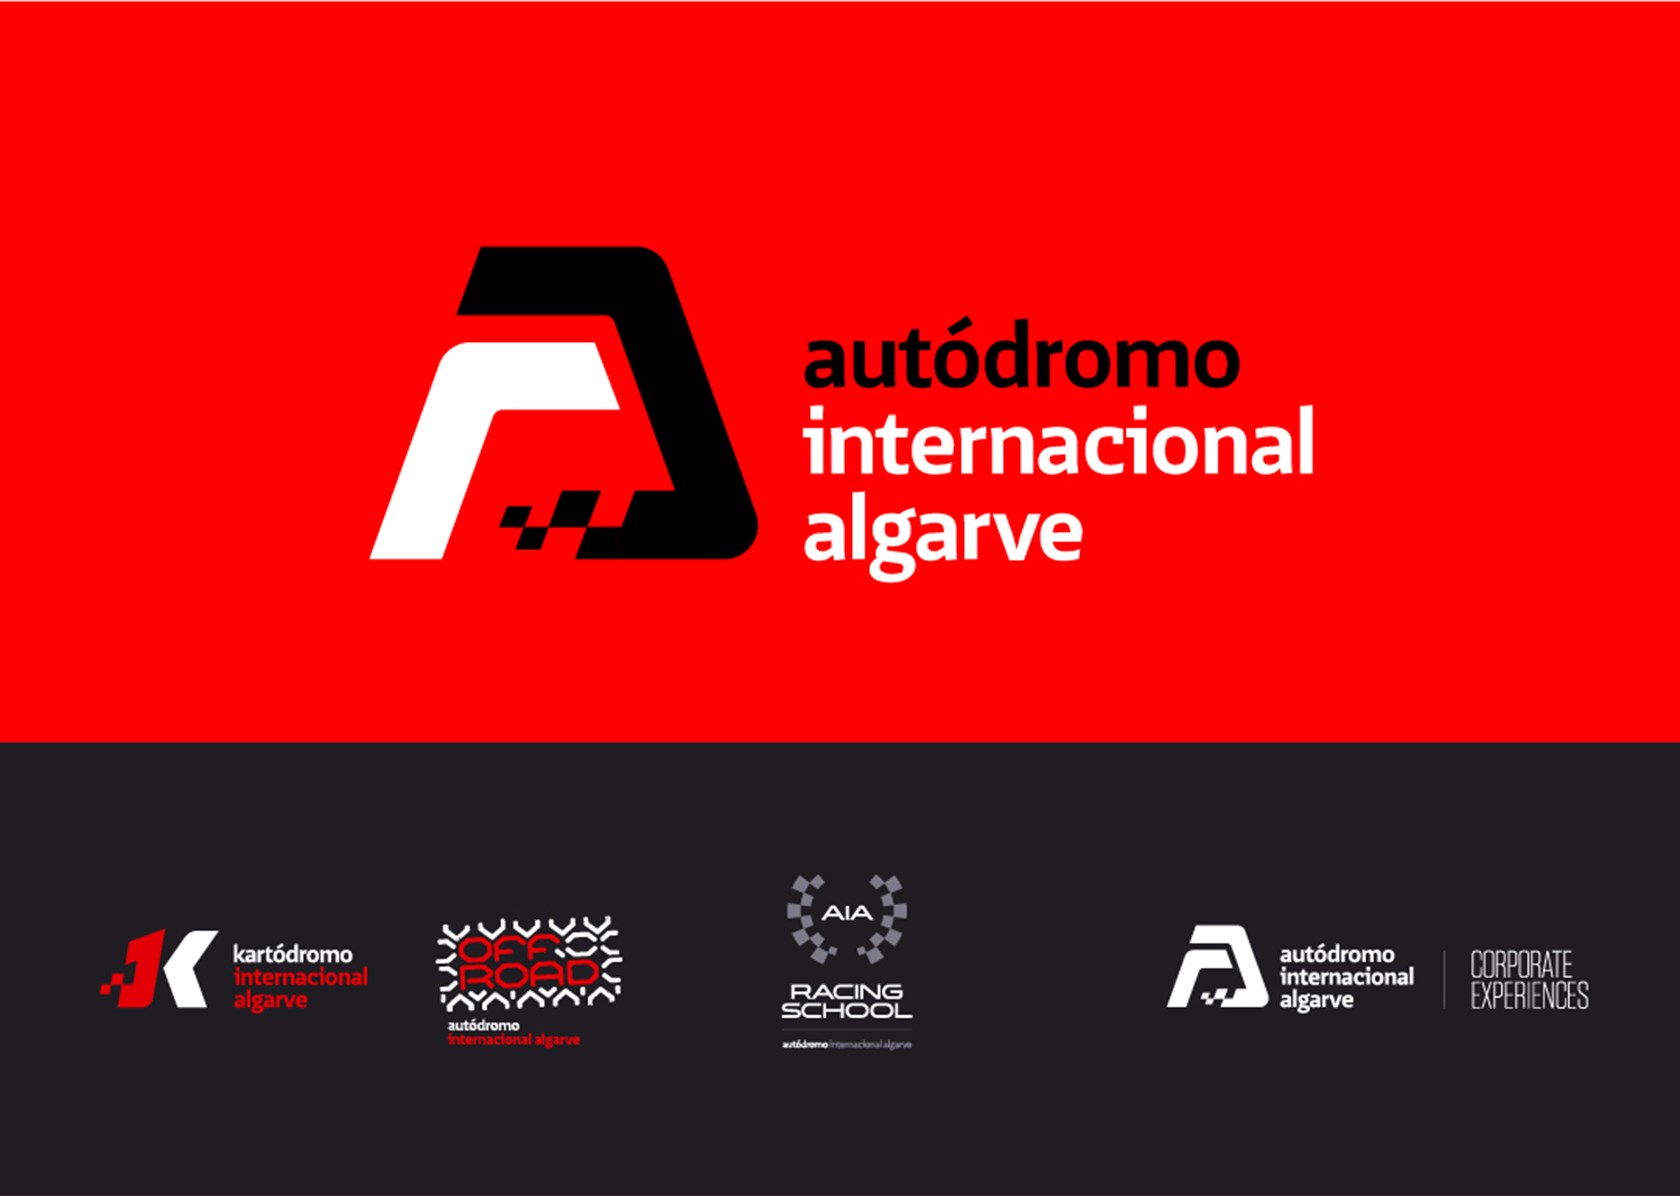 Piste internationale de l'Algarve -
Positionnement des pôles de la marque